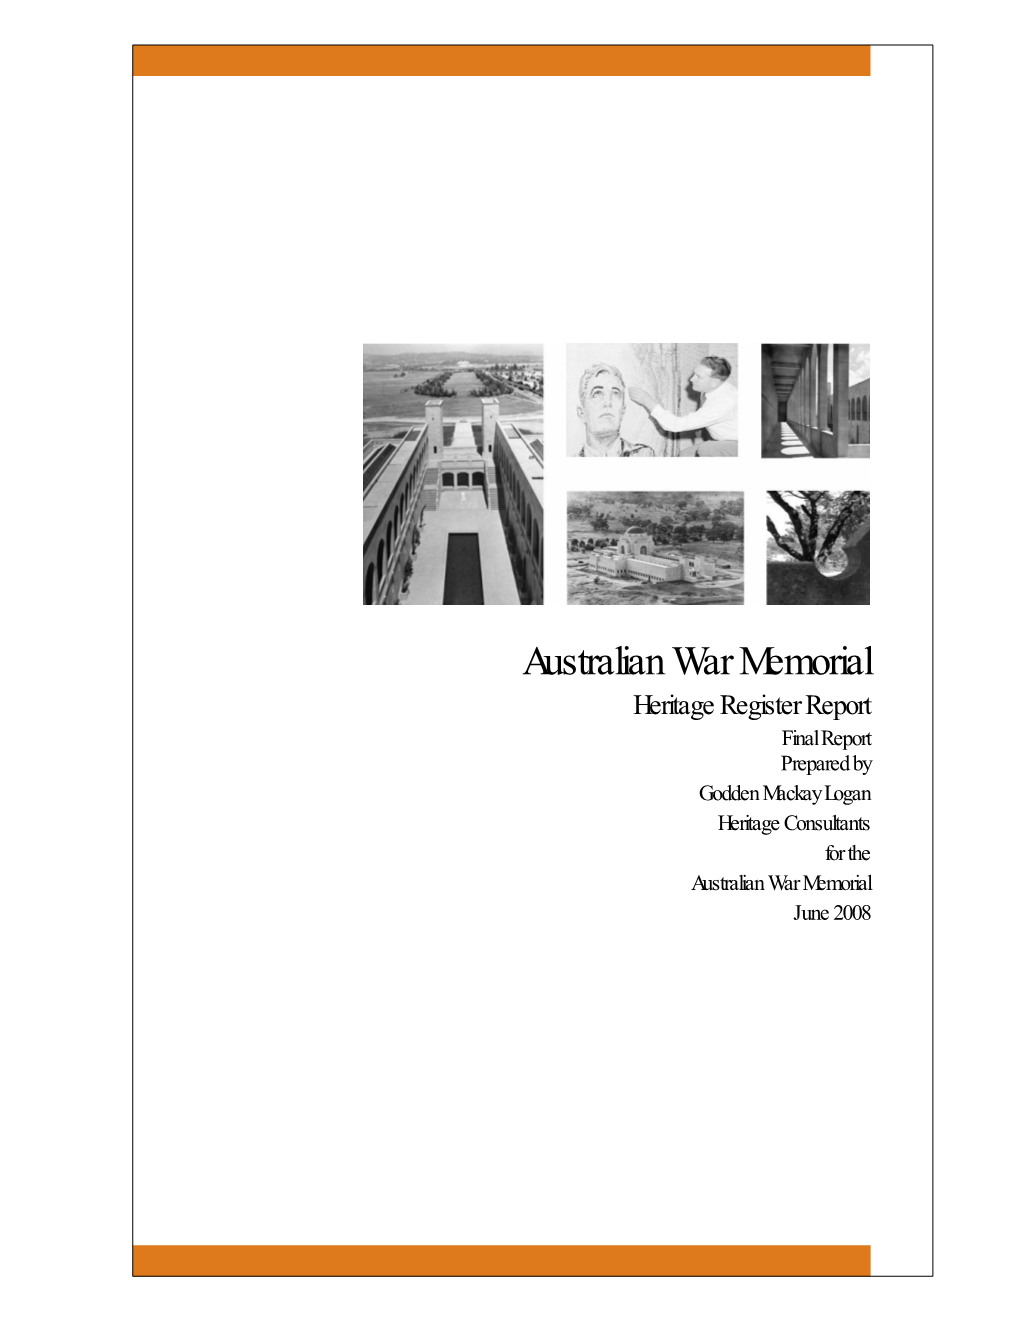 Australian War Memorial Heritage Register Report Final Report Prepared by Godden Mackay Logan Heritage Consultants for the Australian War Memorial June 2008